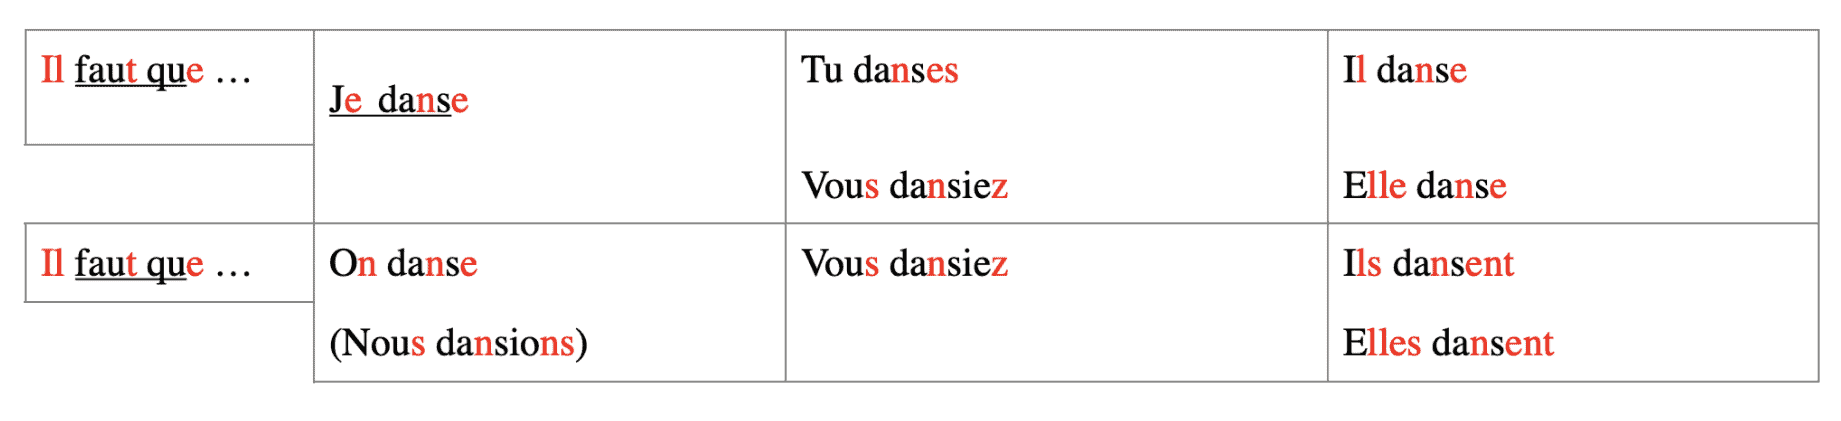 learn french language basic